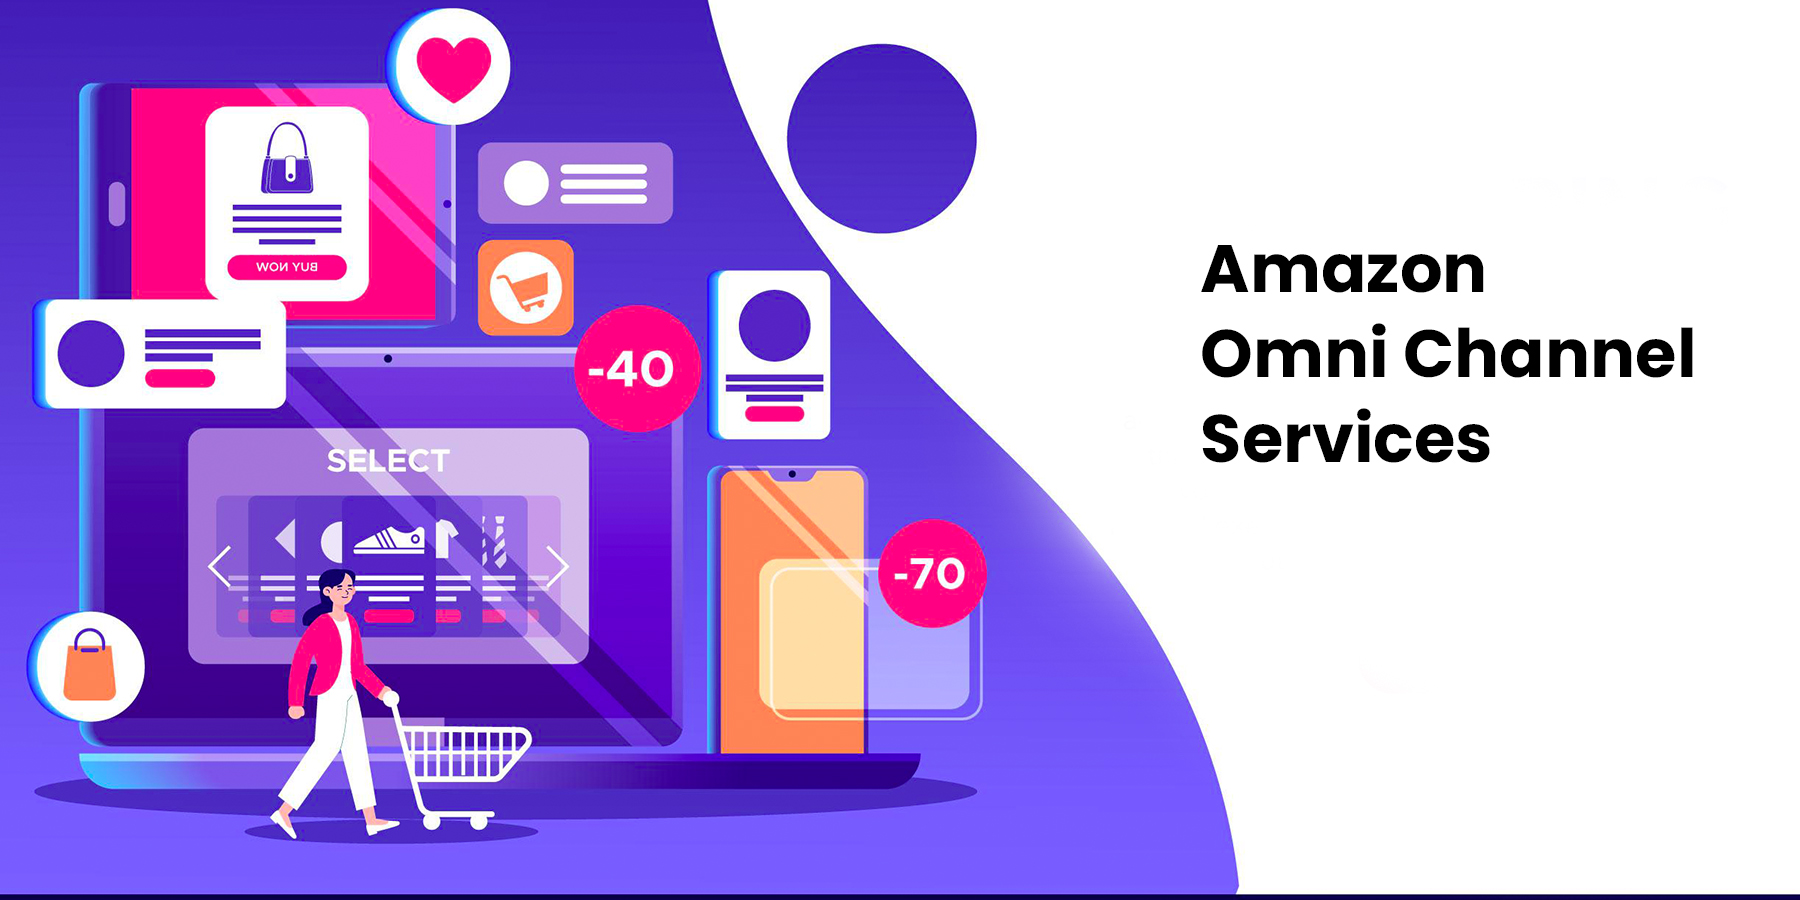 Amazon Omni Channel Services